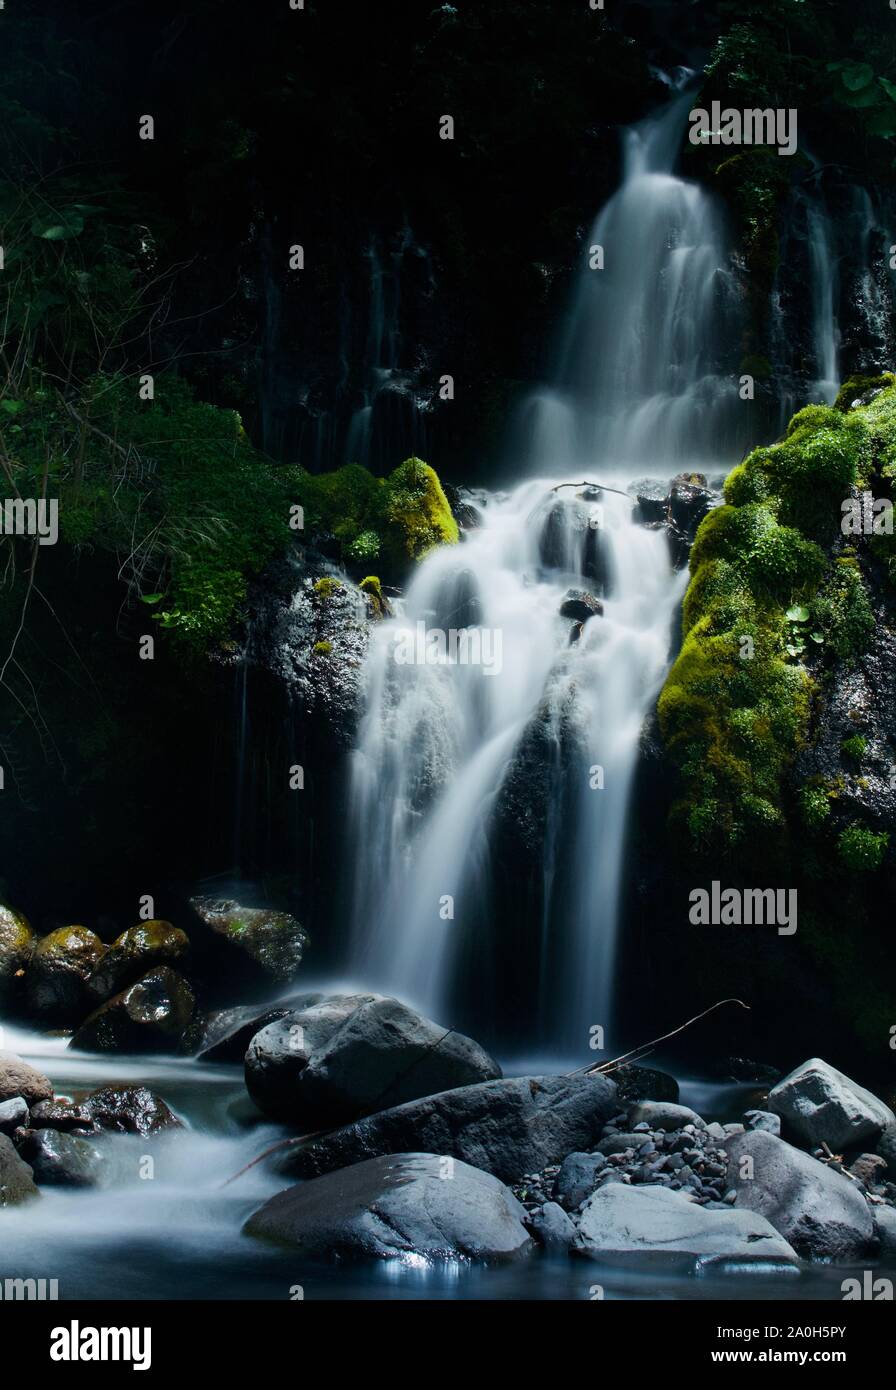 Doryu waterfall in Yamanashi, Japan Stock Photo